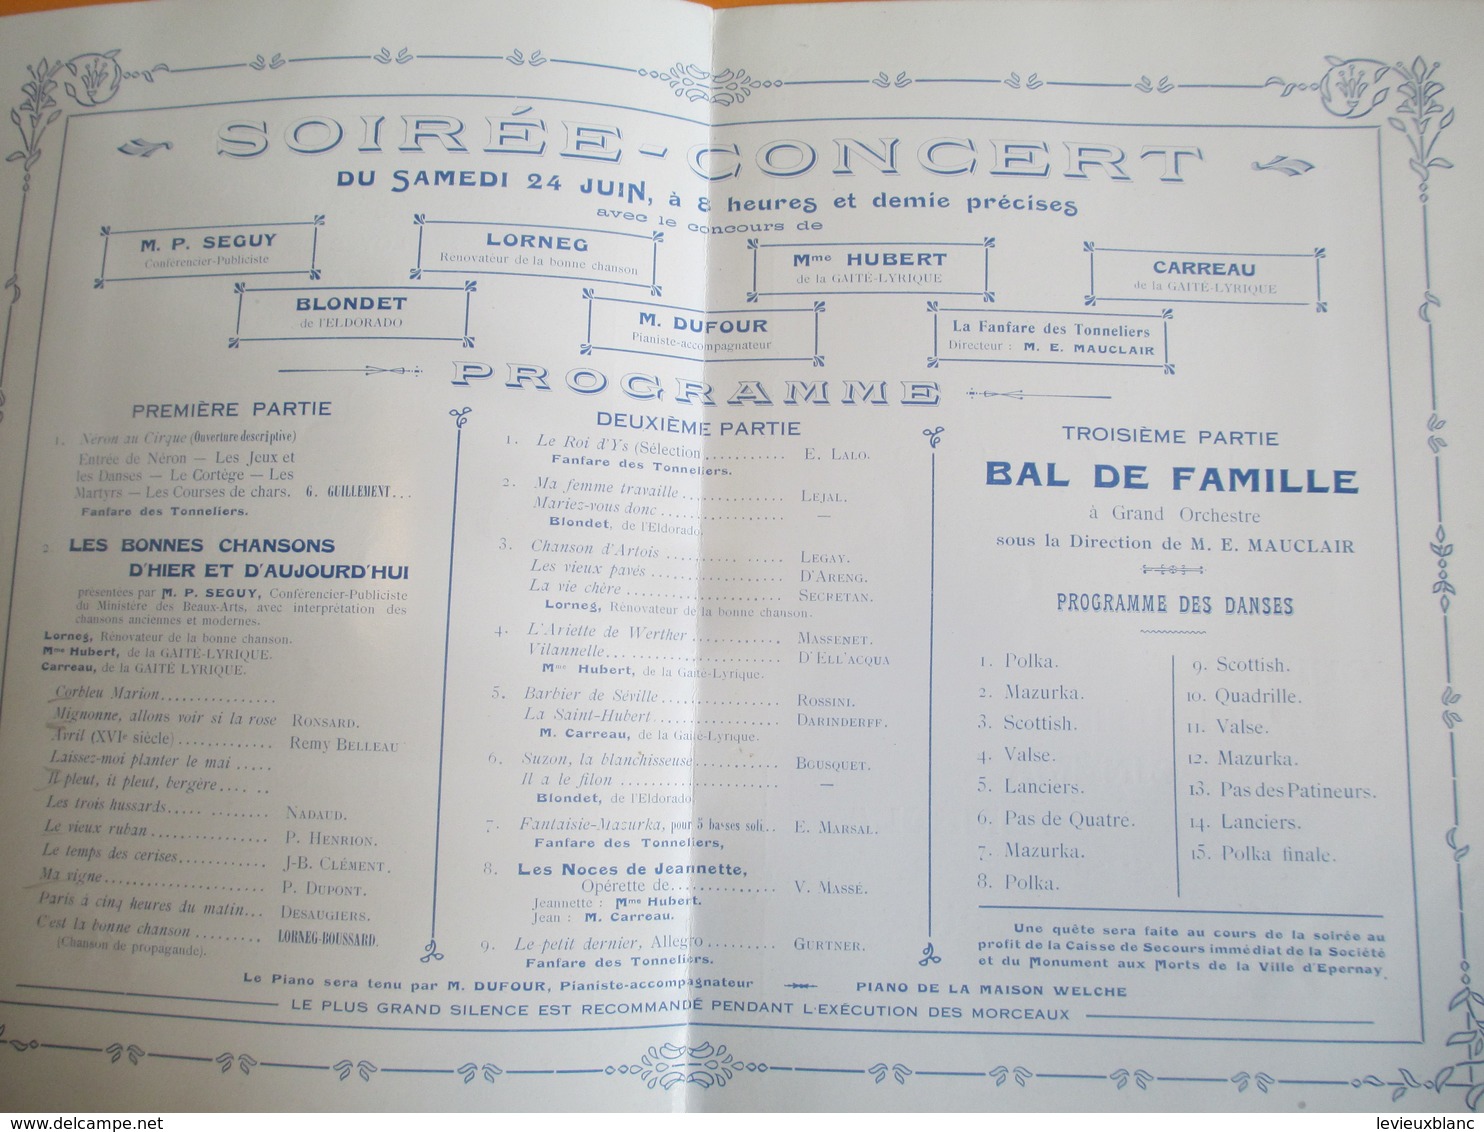 Programme/ Fête De Saint-Jean/ Corporatio Des Ouvriers Cavistes- Tonneliers_Bouchonniers/EPERNAY/ 1922    PROG164 - Religion & Esotericism